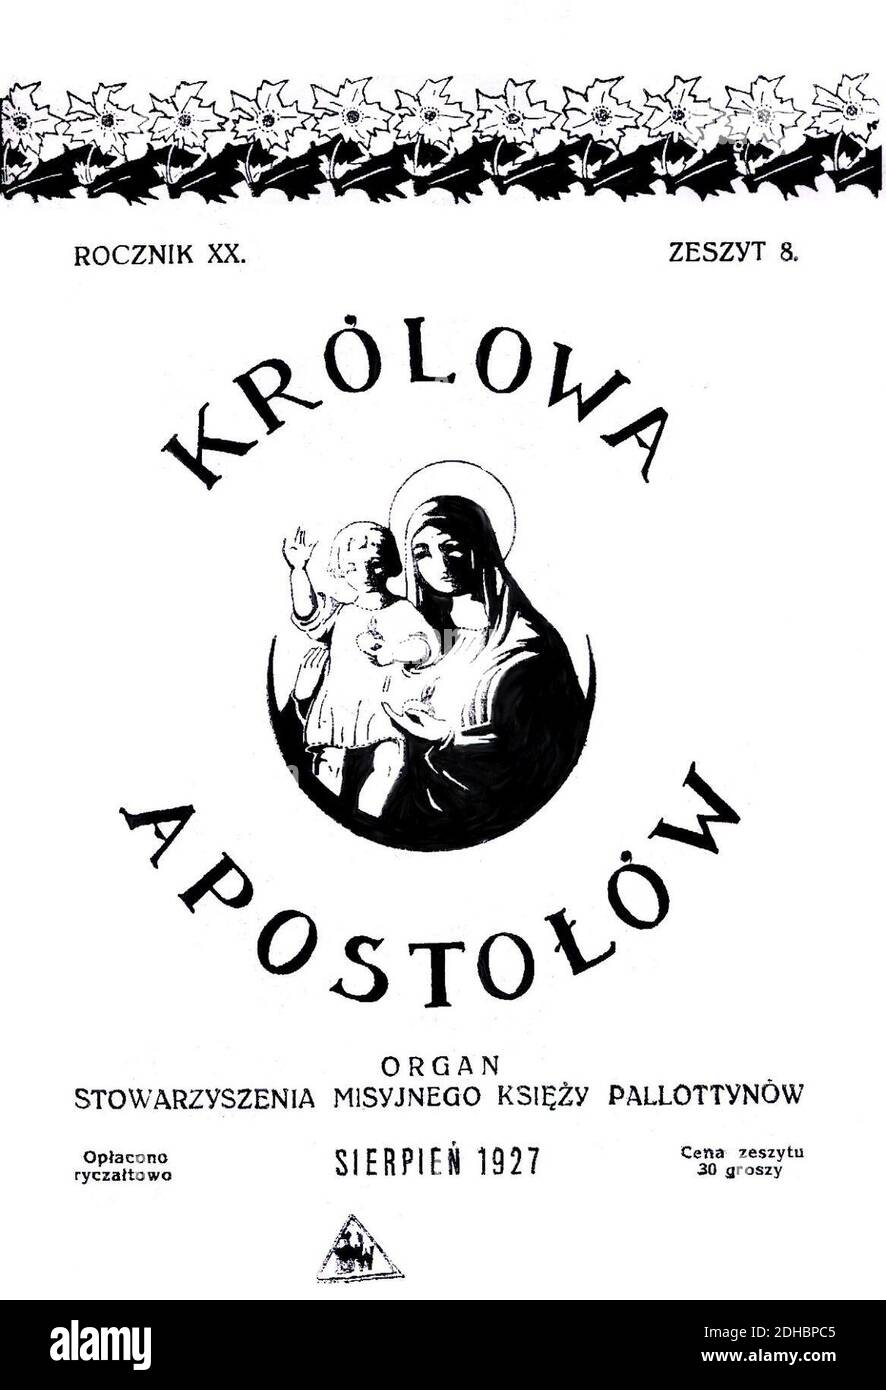 Krolowa 1. Stock Photo